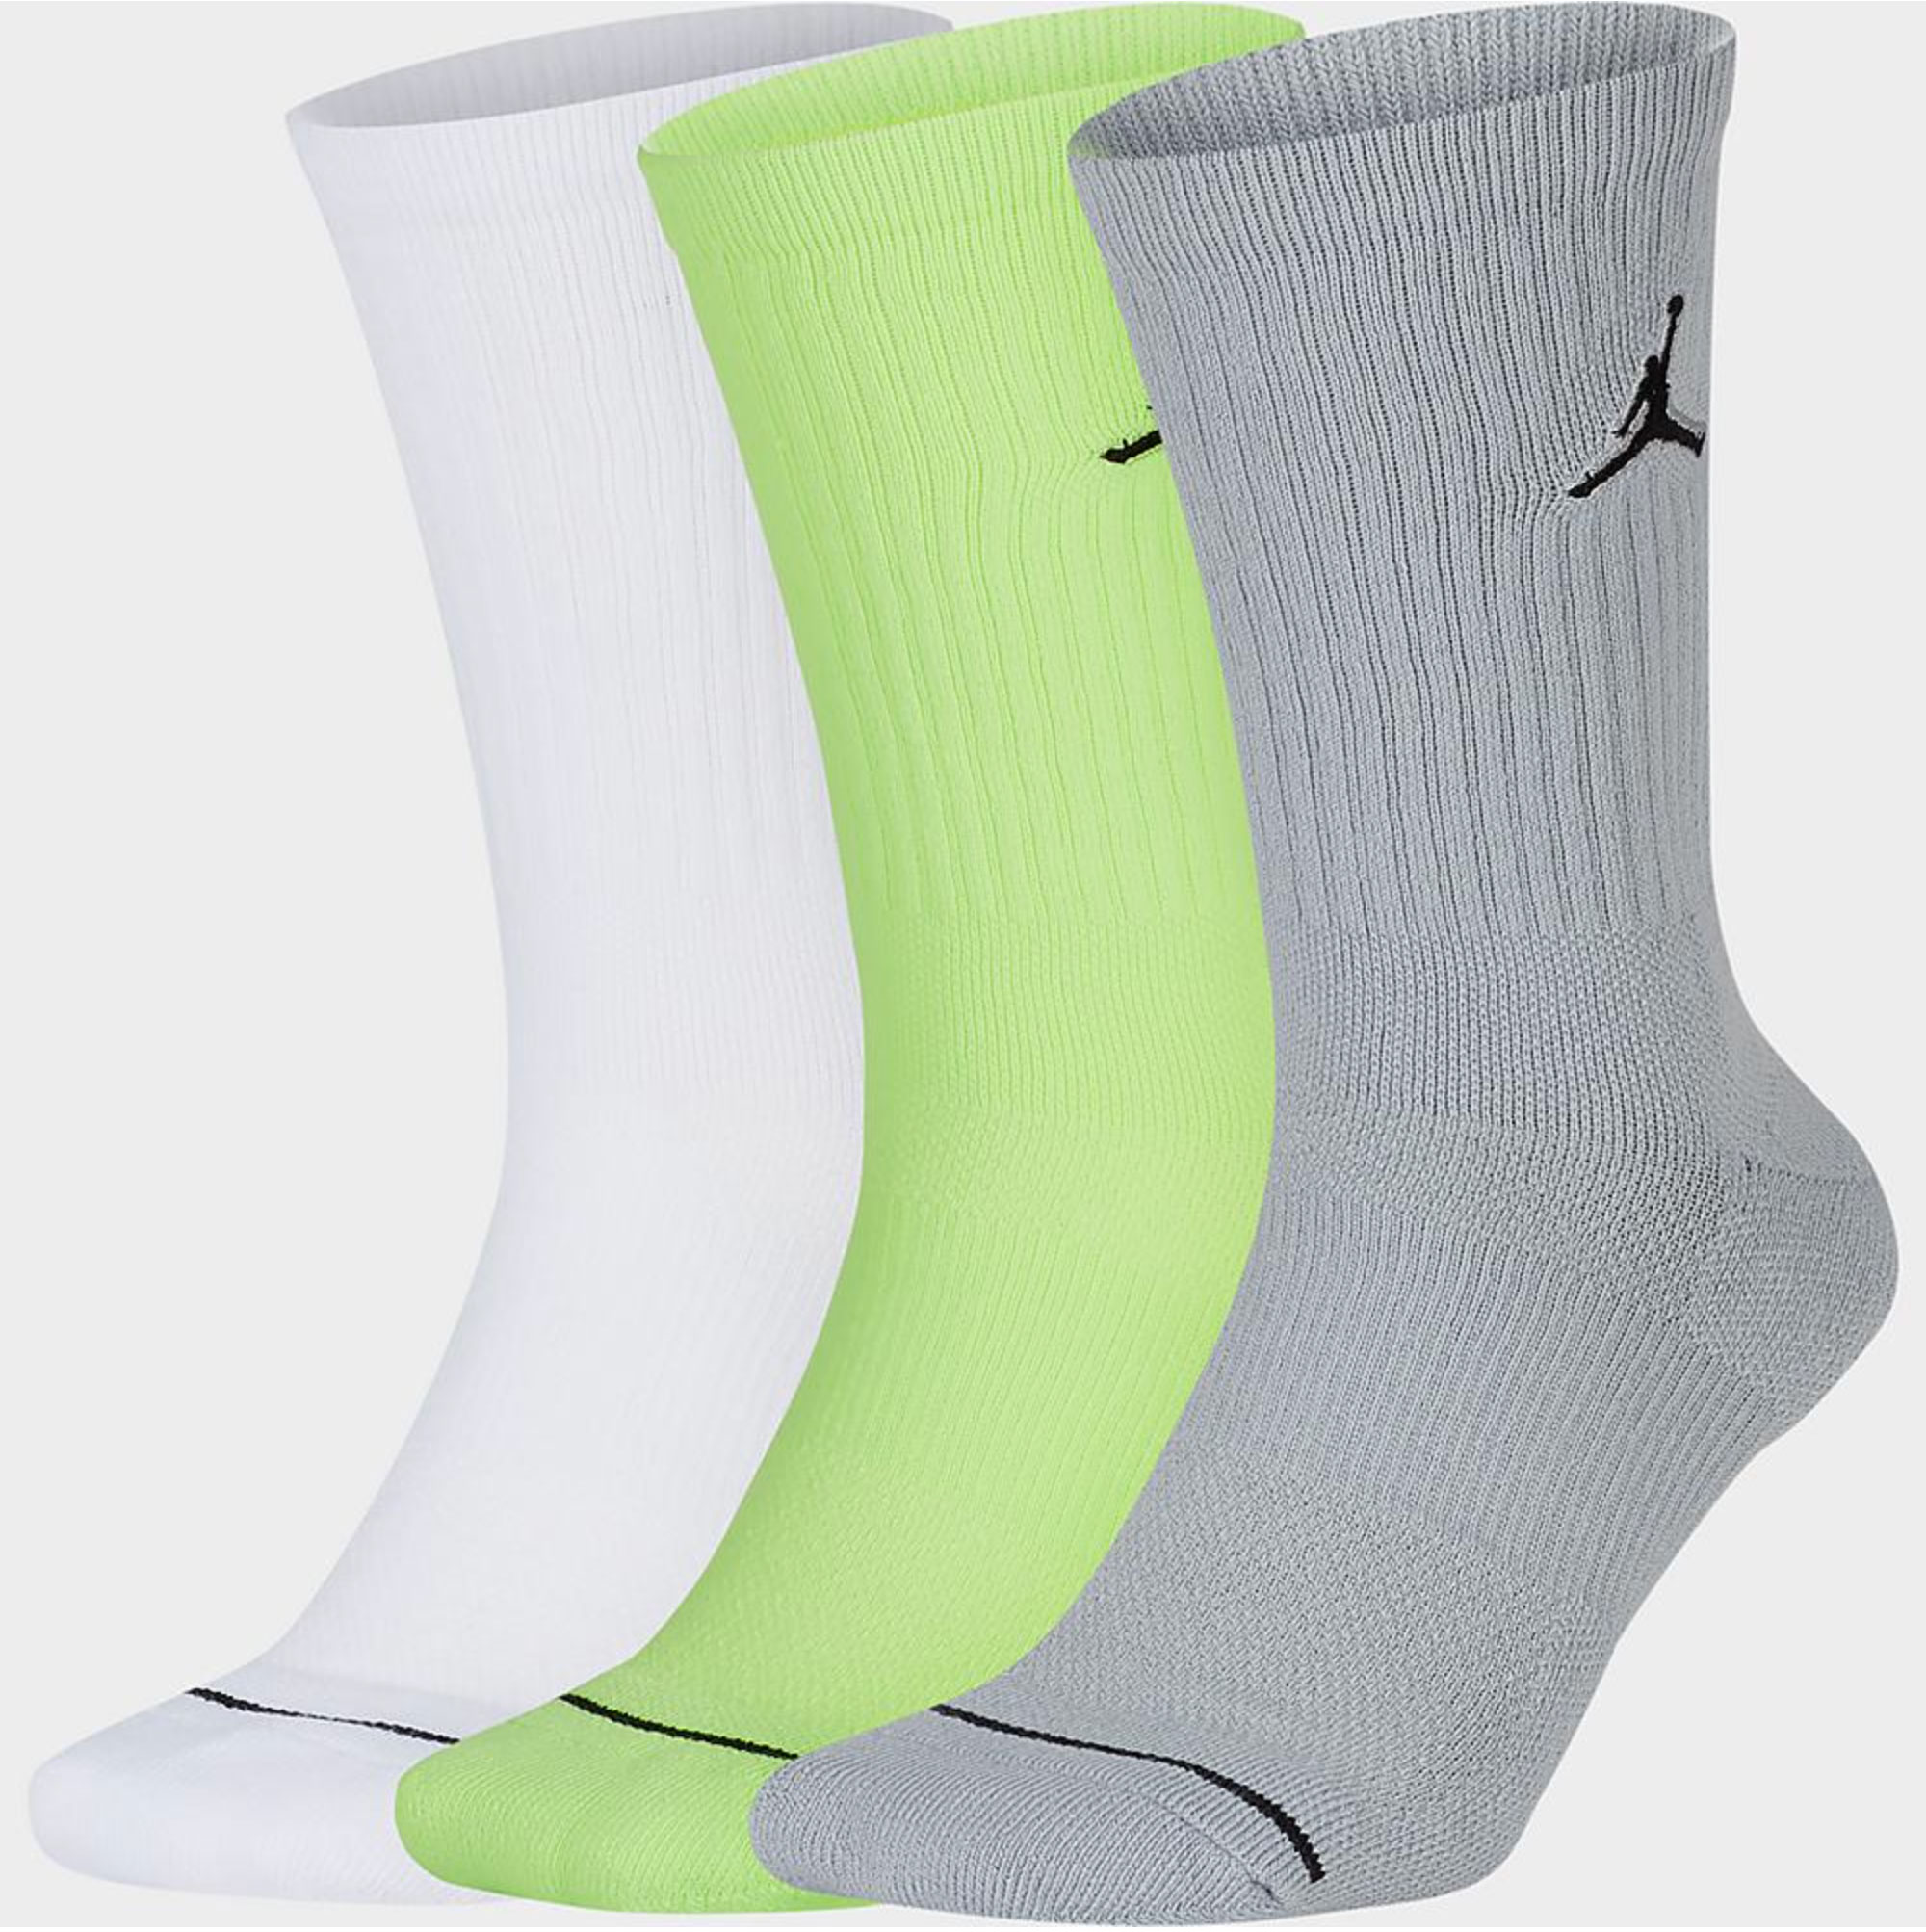 socks for jordan 4 2